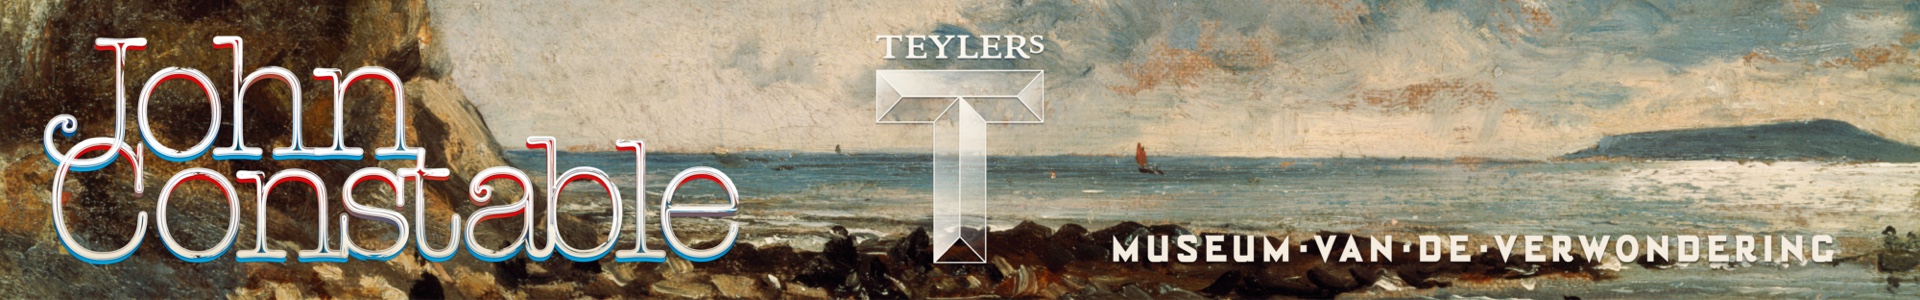 Teylers Museum - John Constable